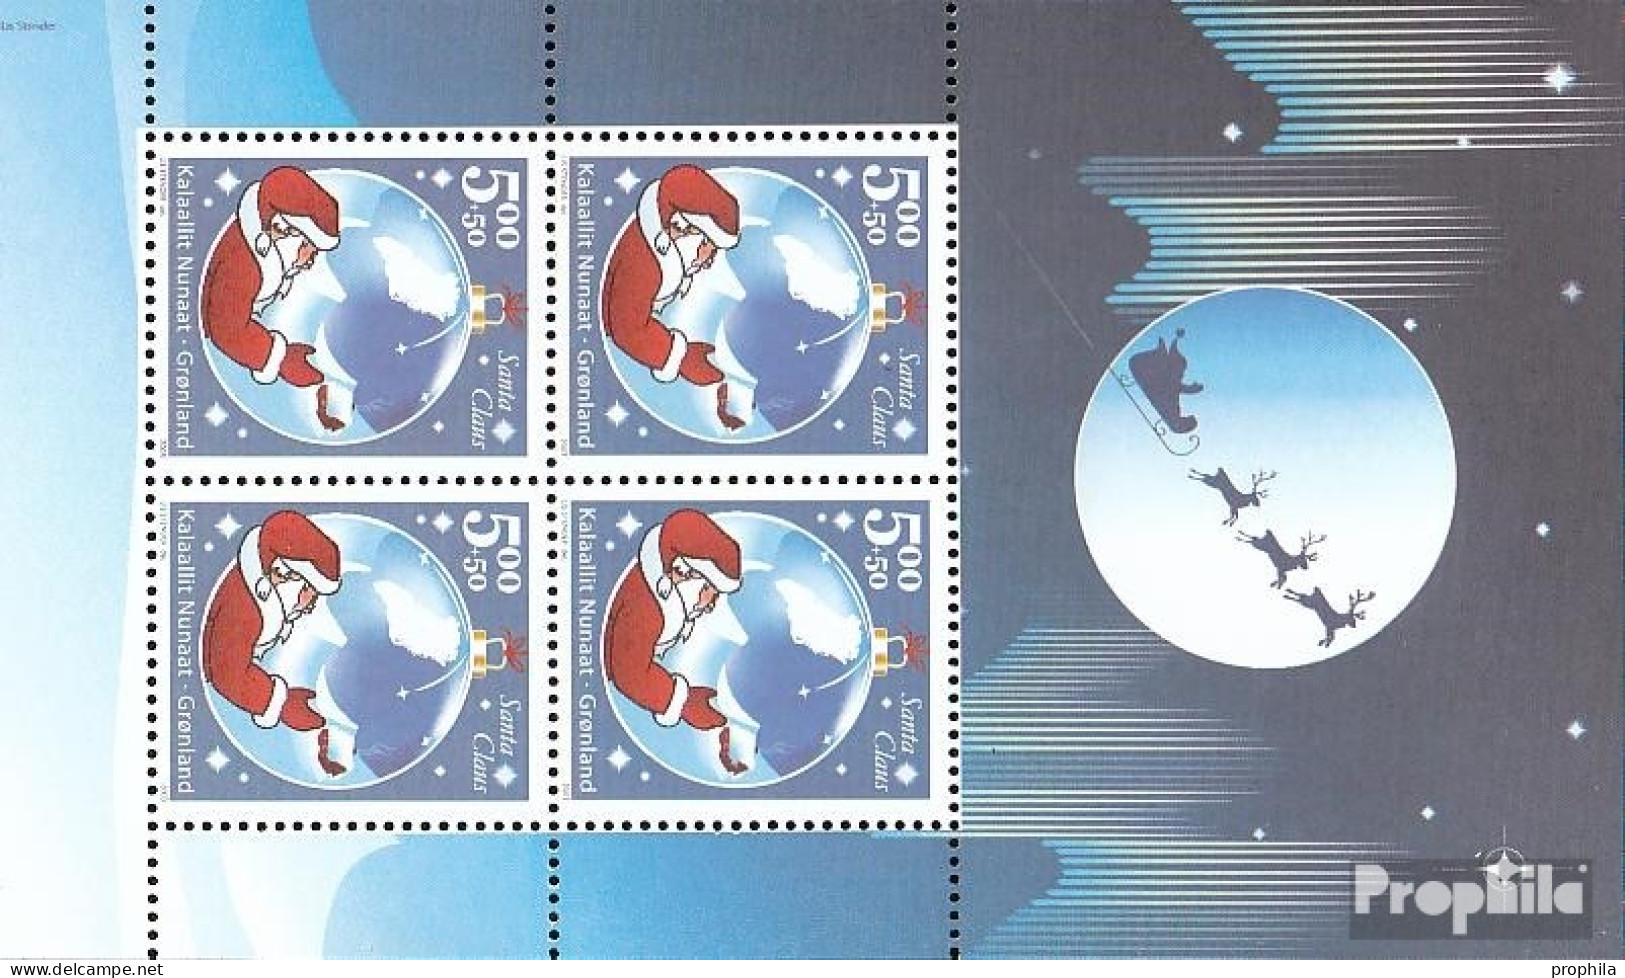 Dänemark - Grönland Block26 (kompl.Ausg.) Postfrisch 2003 Santa Claus Of Greenland - Blocchi